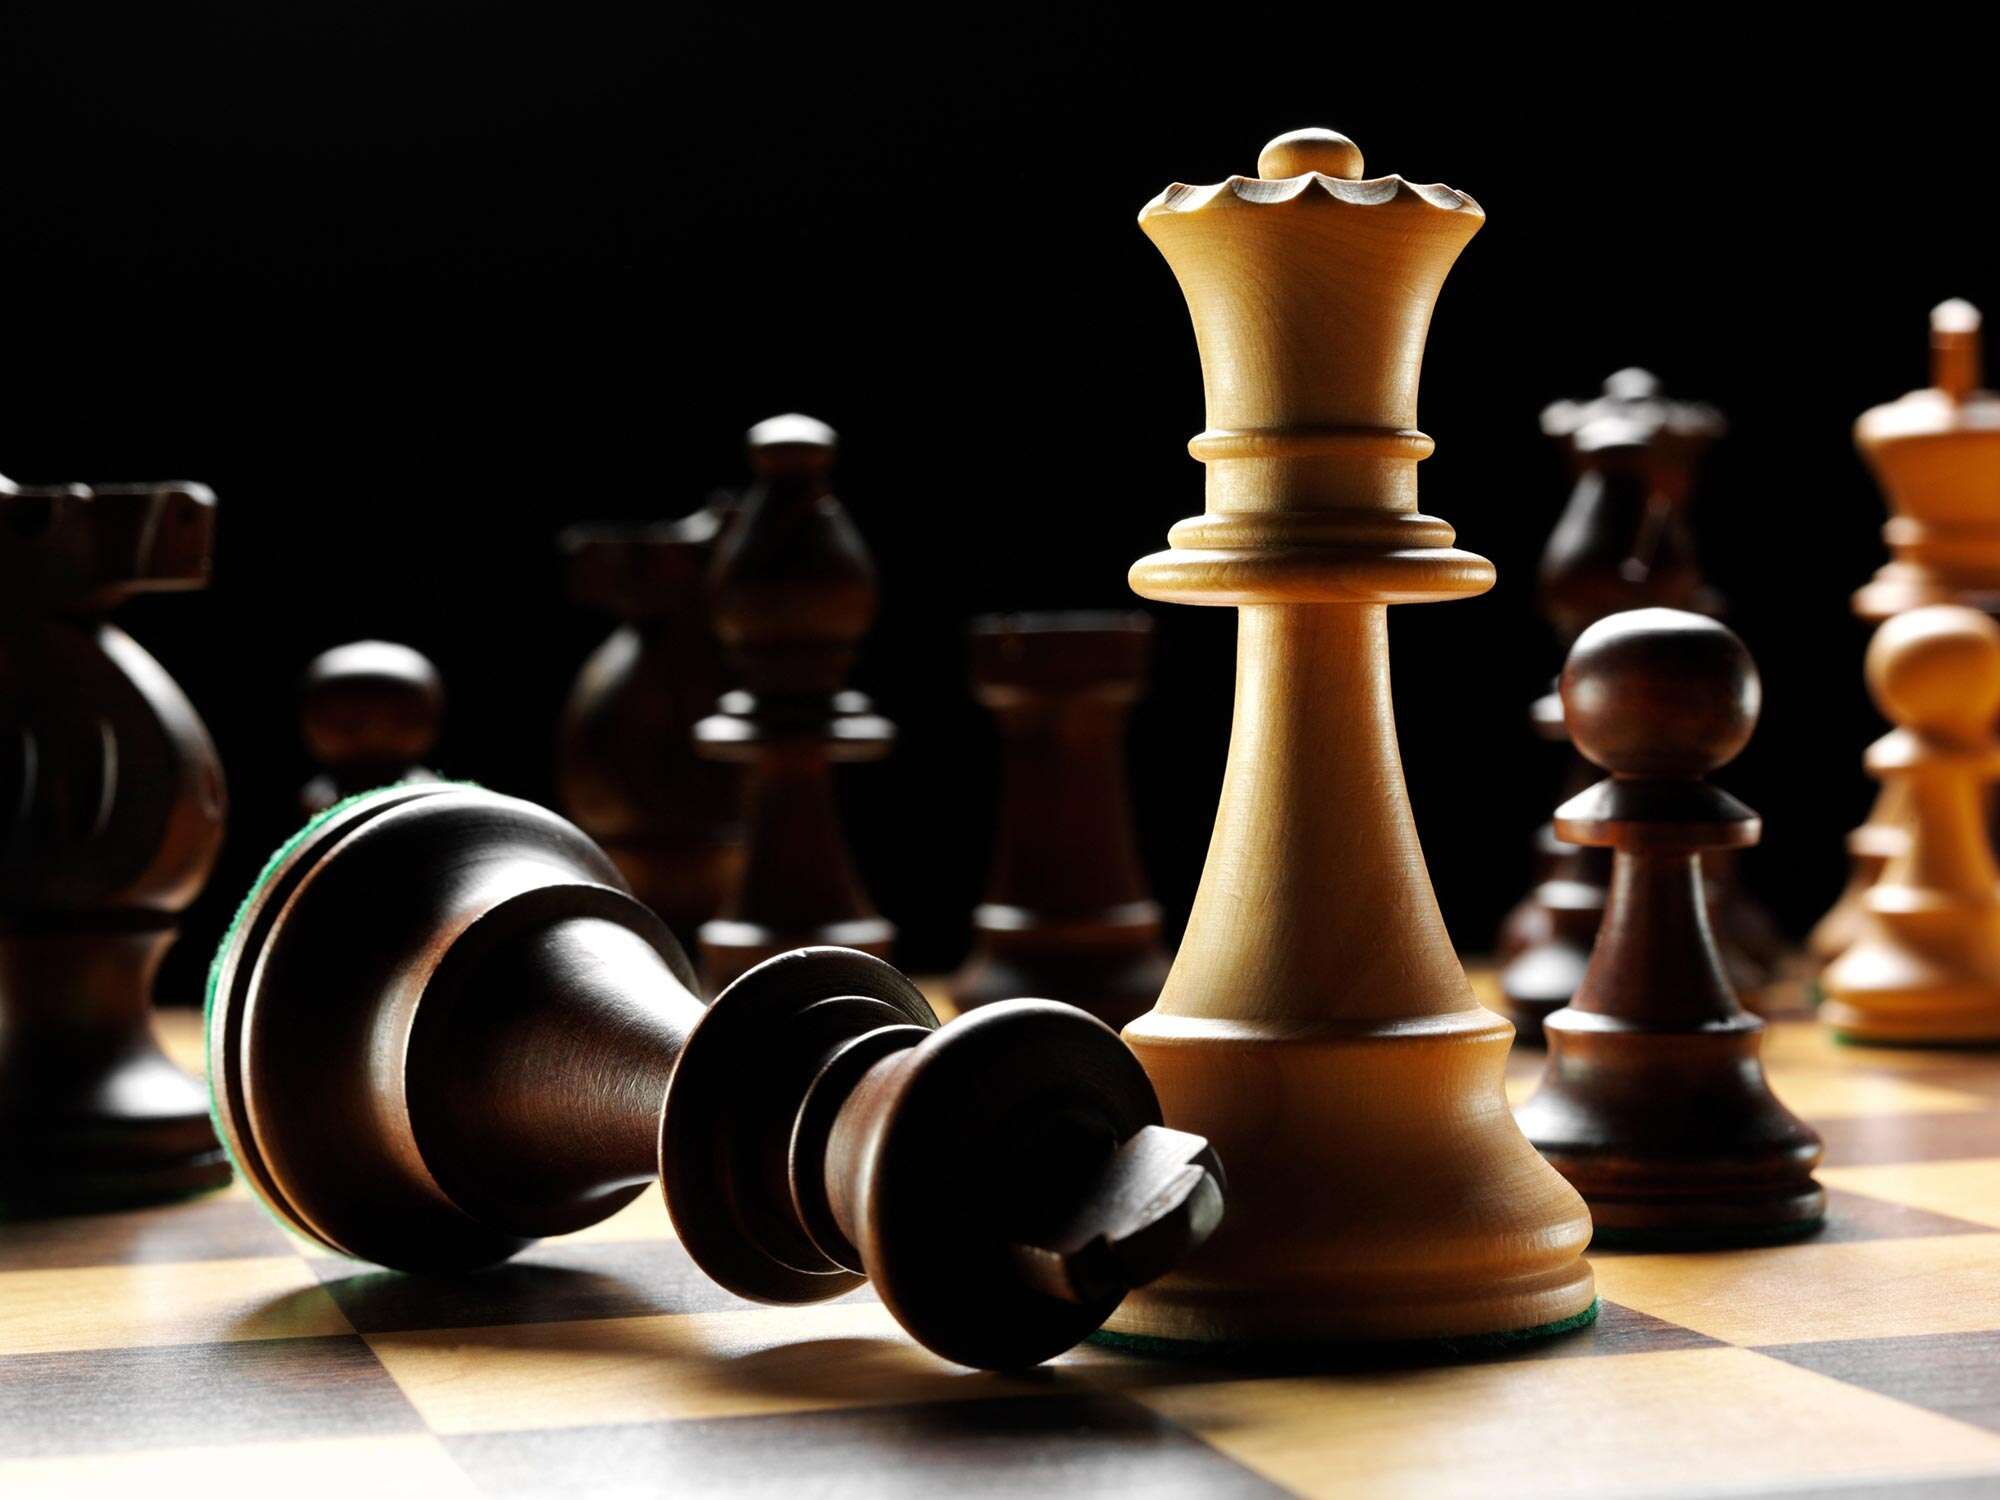 Jogador de xadrez é acusado de trapaça e se oferece para jogar pelado